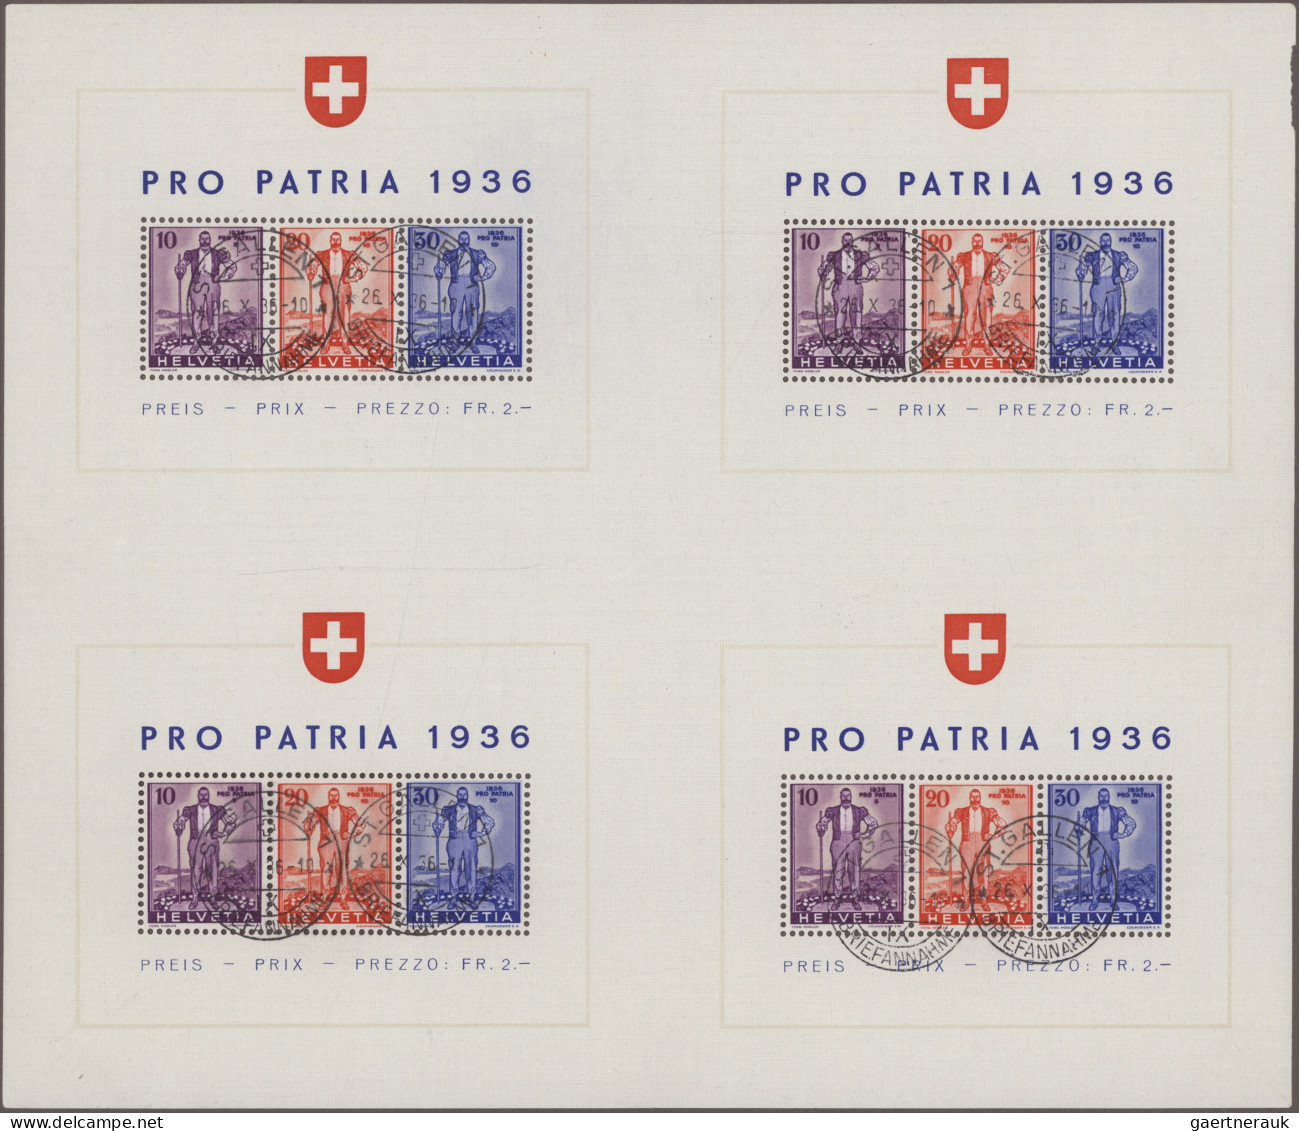 Schweiz: 1936 Pro Patria-Block Im Großbogen Von 4 Blocks, Jeweils Sauber Gestemp - Used Stamps